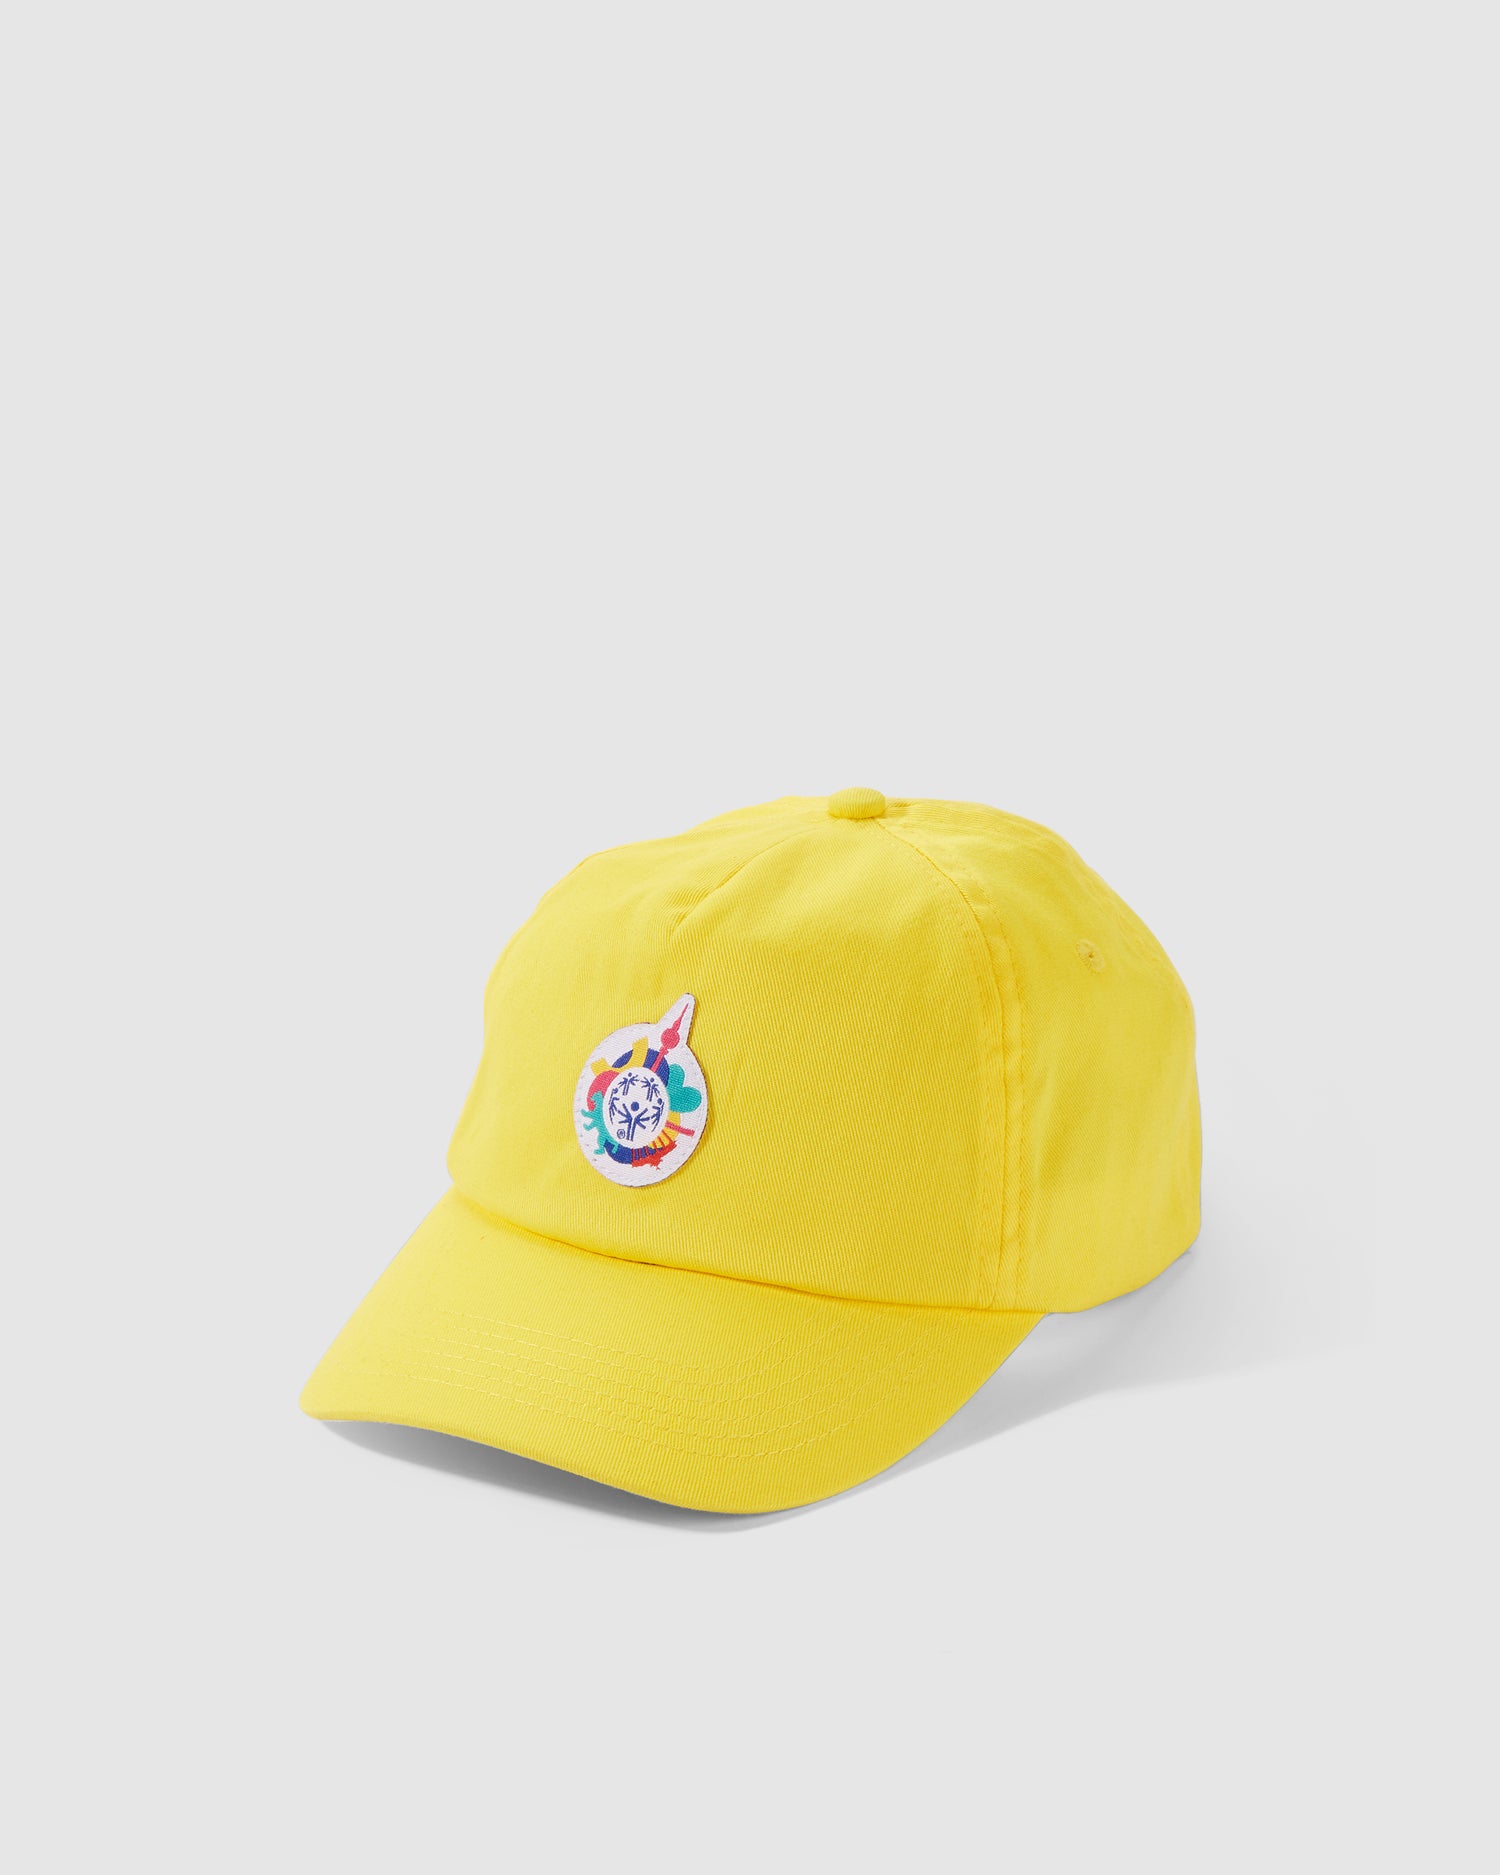 Cap in gelb mit kleinem Weltspiele Logo